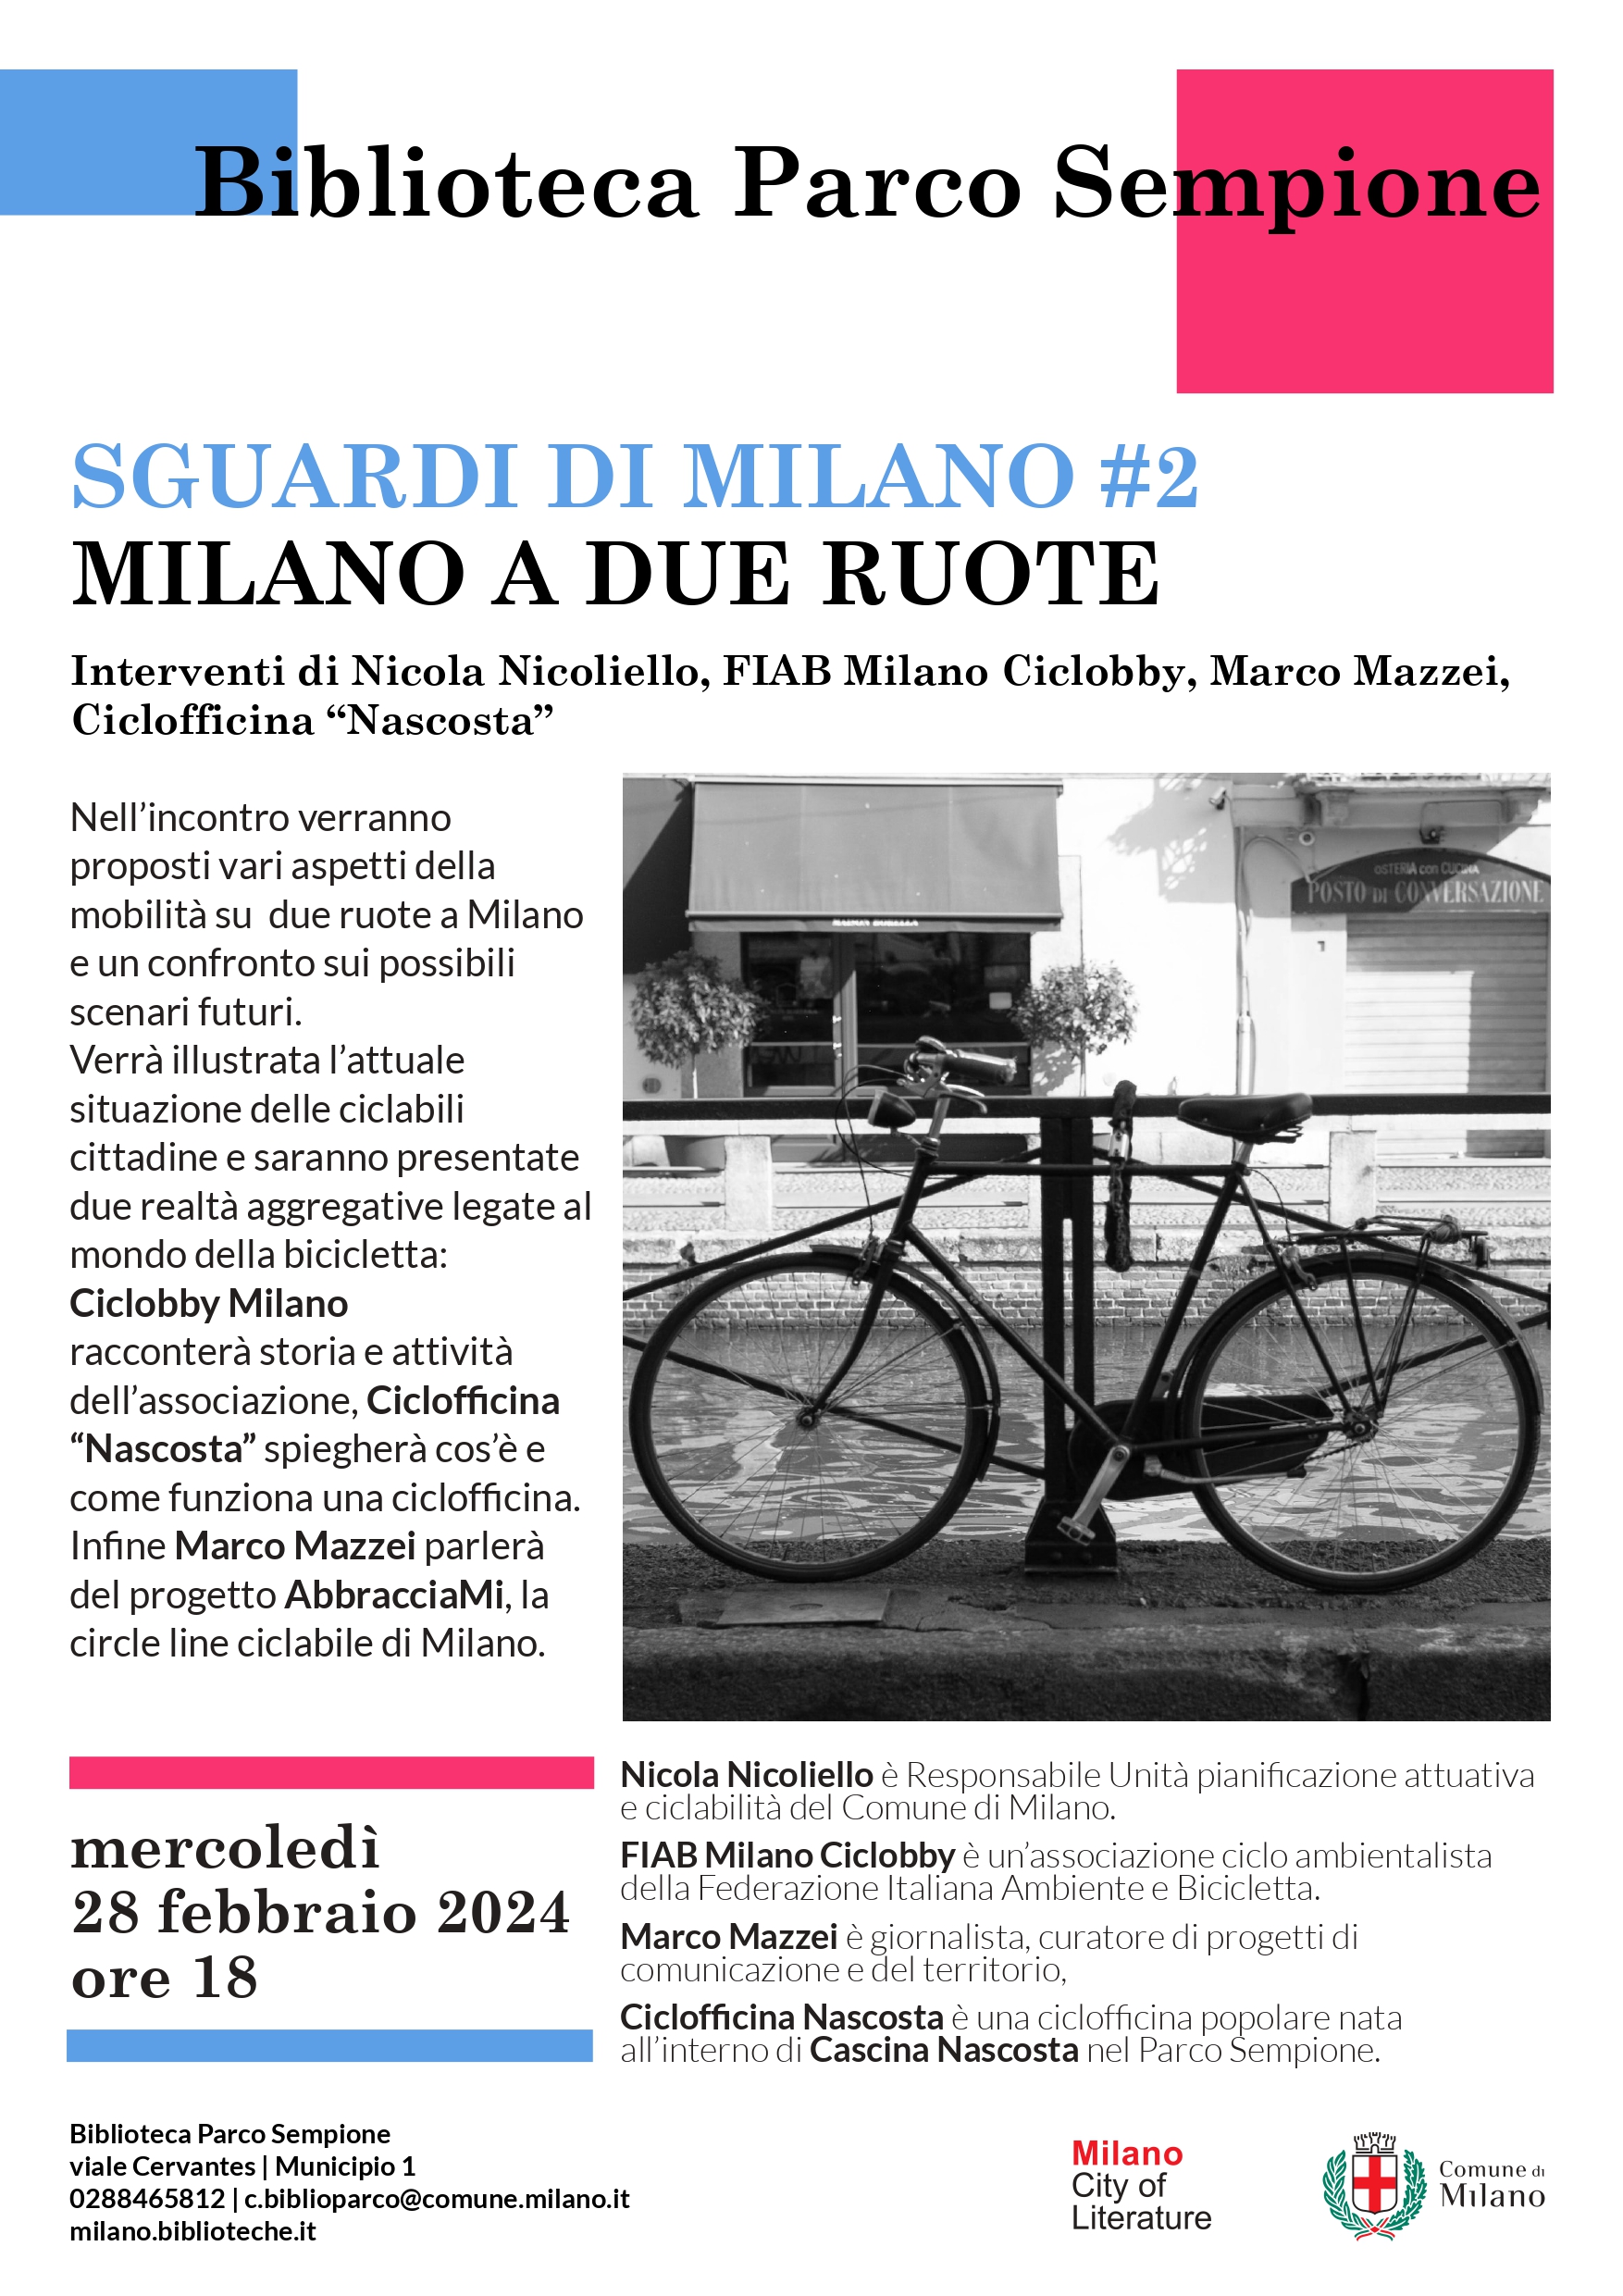 Sguardi di Milano #2: Milano a due ruote